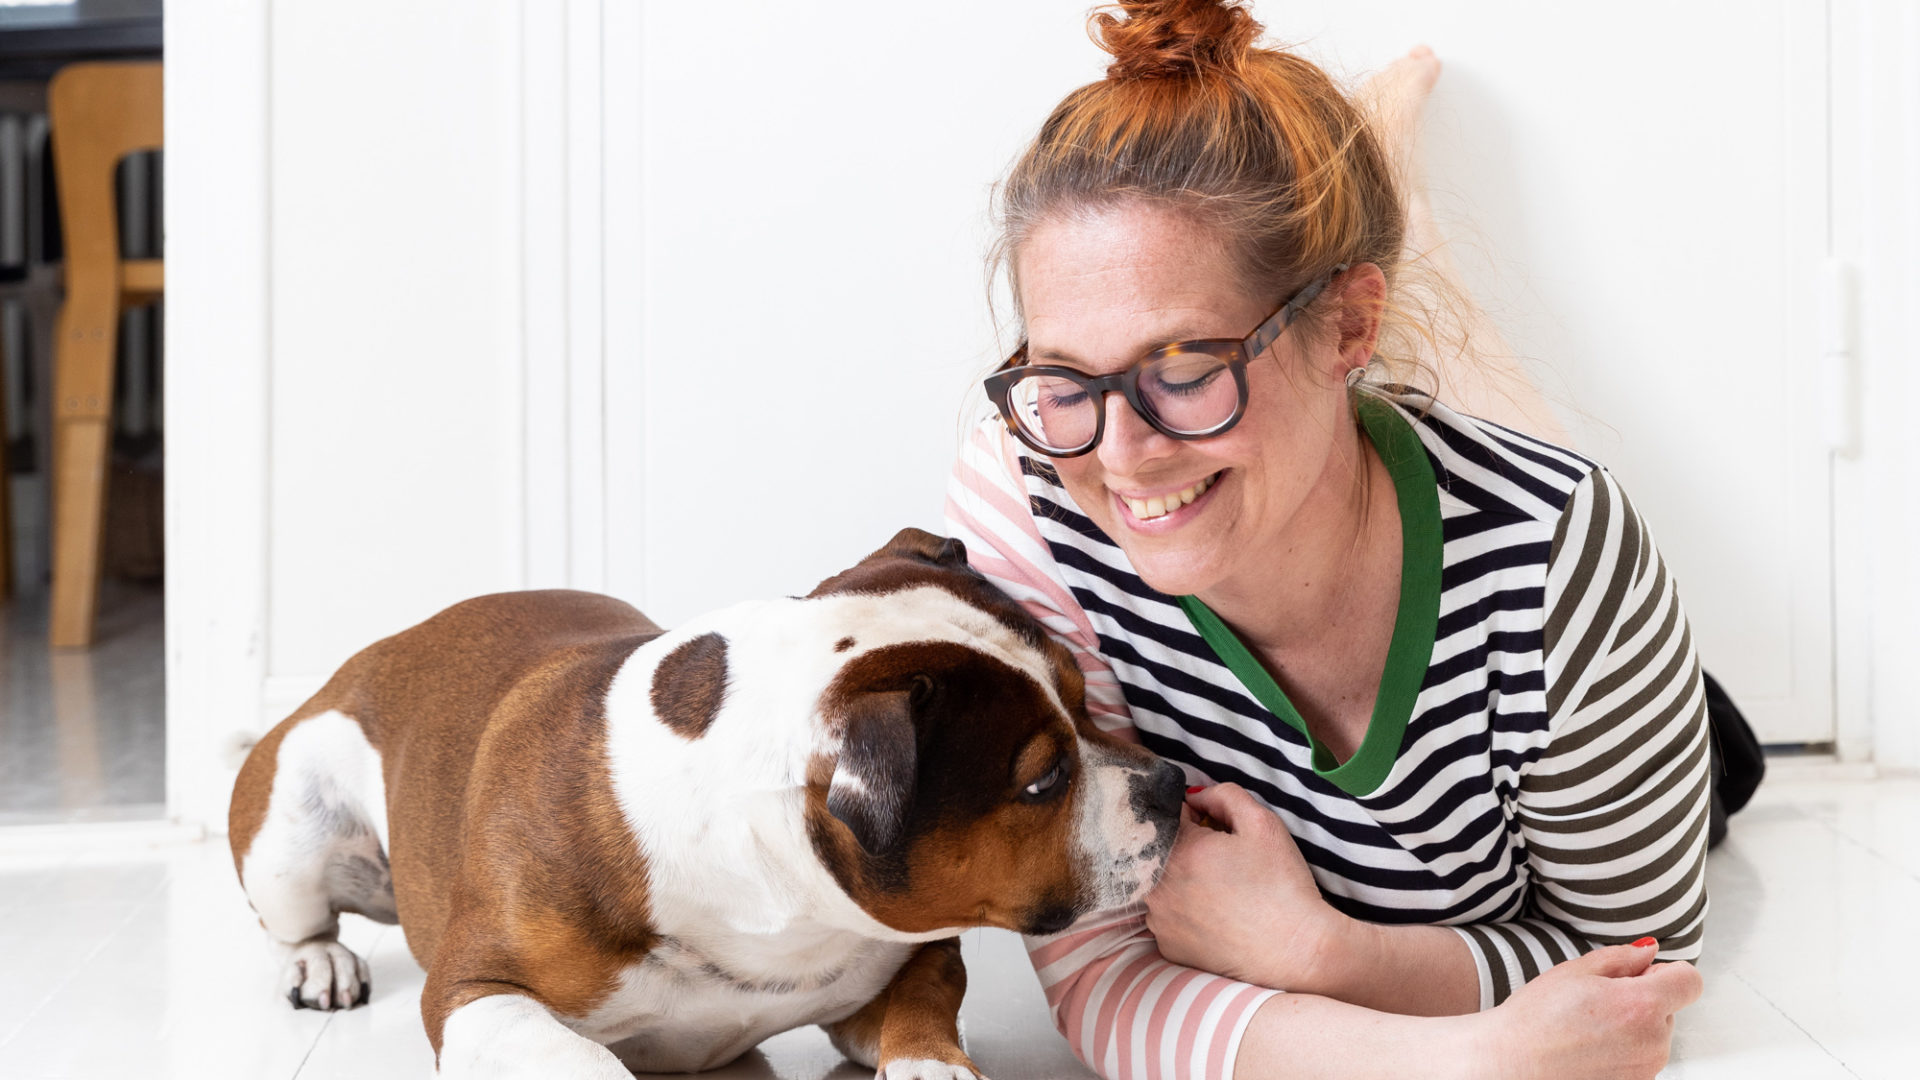 Toimittaja-juontaja Jenni Kivessilta lähti selvittämään Puhutaan koiraa -podcastissaan, millaisiin merkkeihin koiran käytöksessä olisi syytä kiinnittää huomiota, jotta ymmärrys omistajan ja koiran välillä syventyisi.